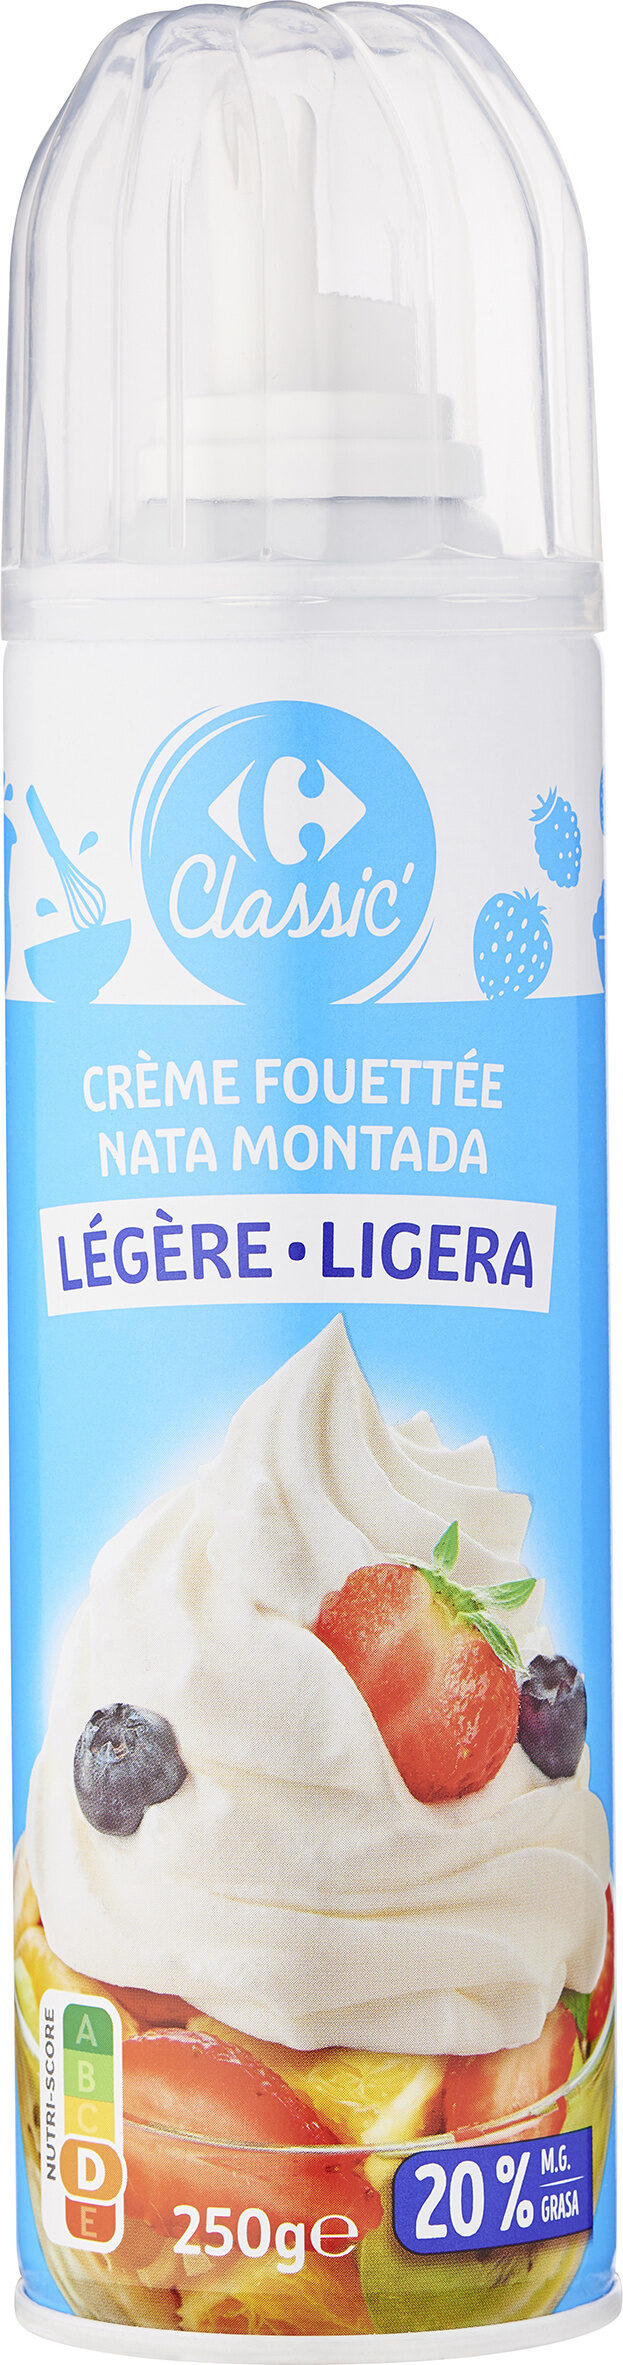 Crème fouettée légère - Producte - fr